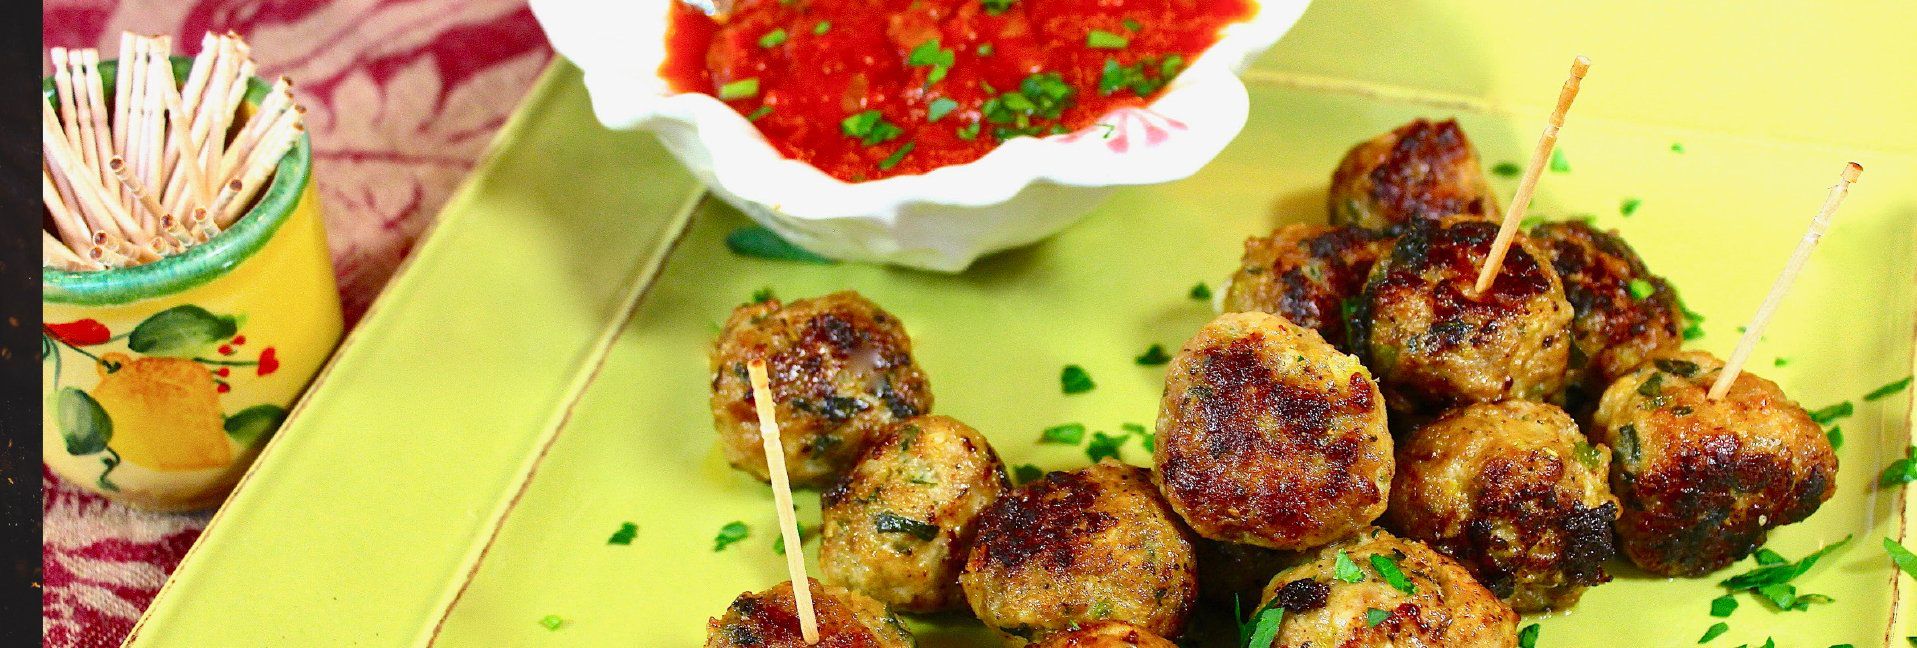 Italian Turkey Meatballs